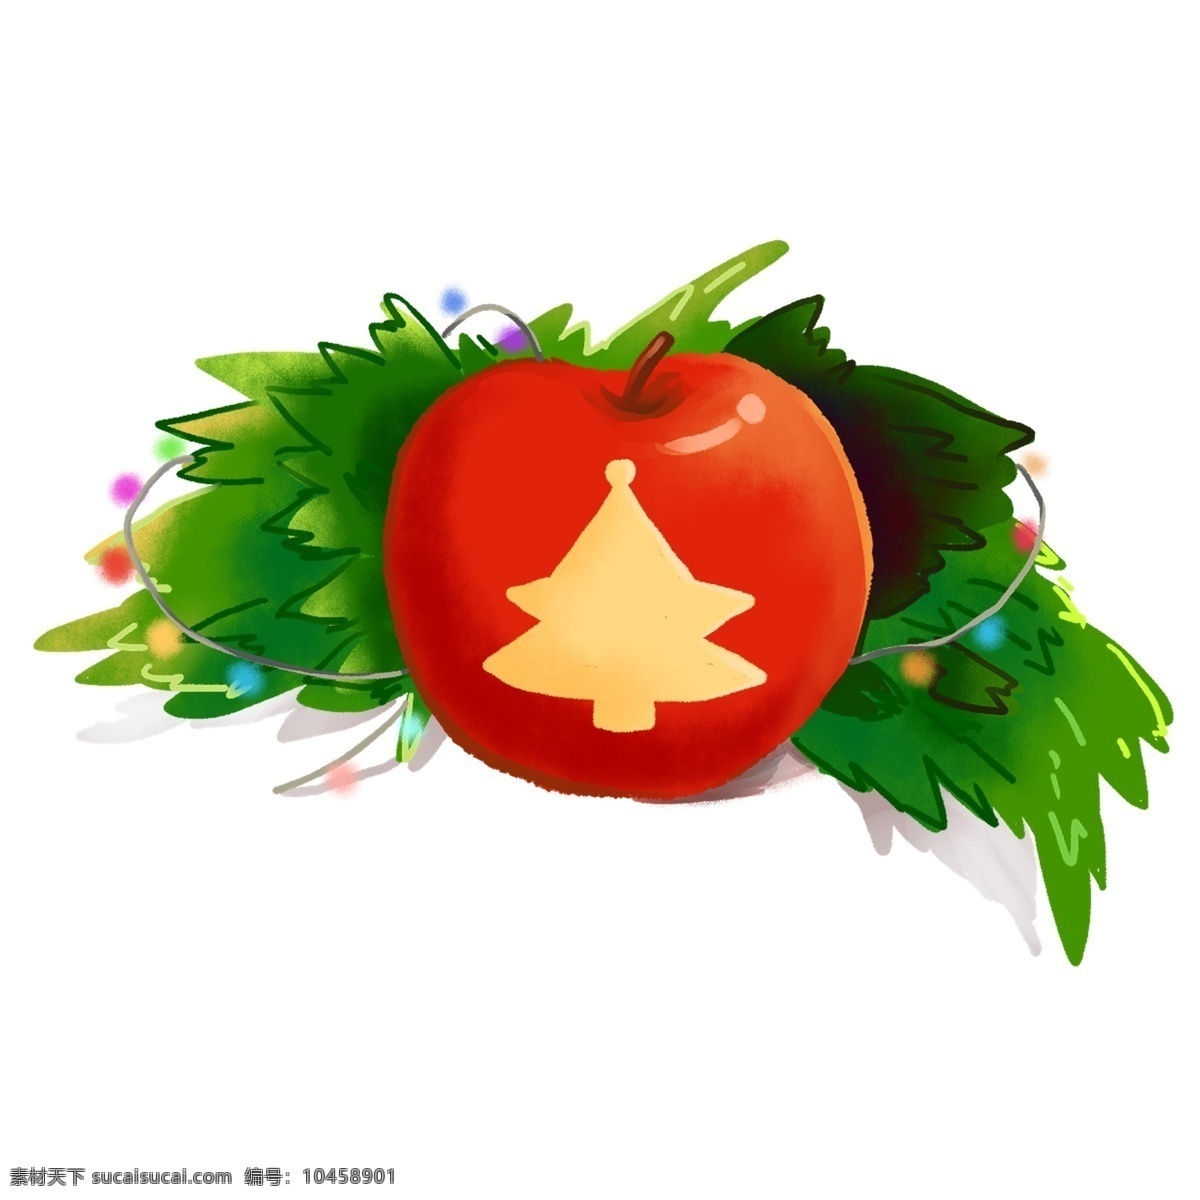 圣诞节 红色 绿色 平安 果 礼物 免 抠 元素 节日 西方传统 苹果 平安夜 可爱 松枝 小彩灯 圣诞树 免抠